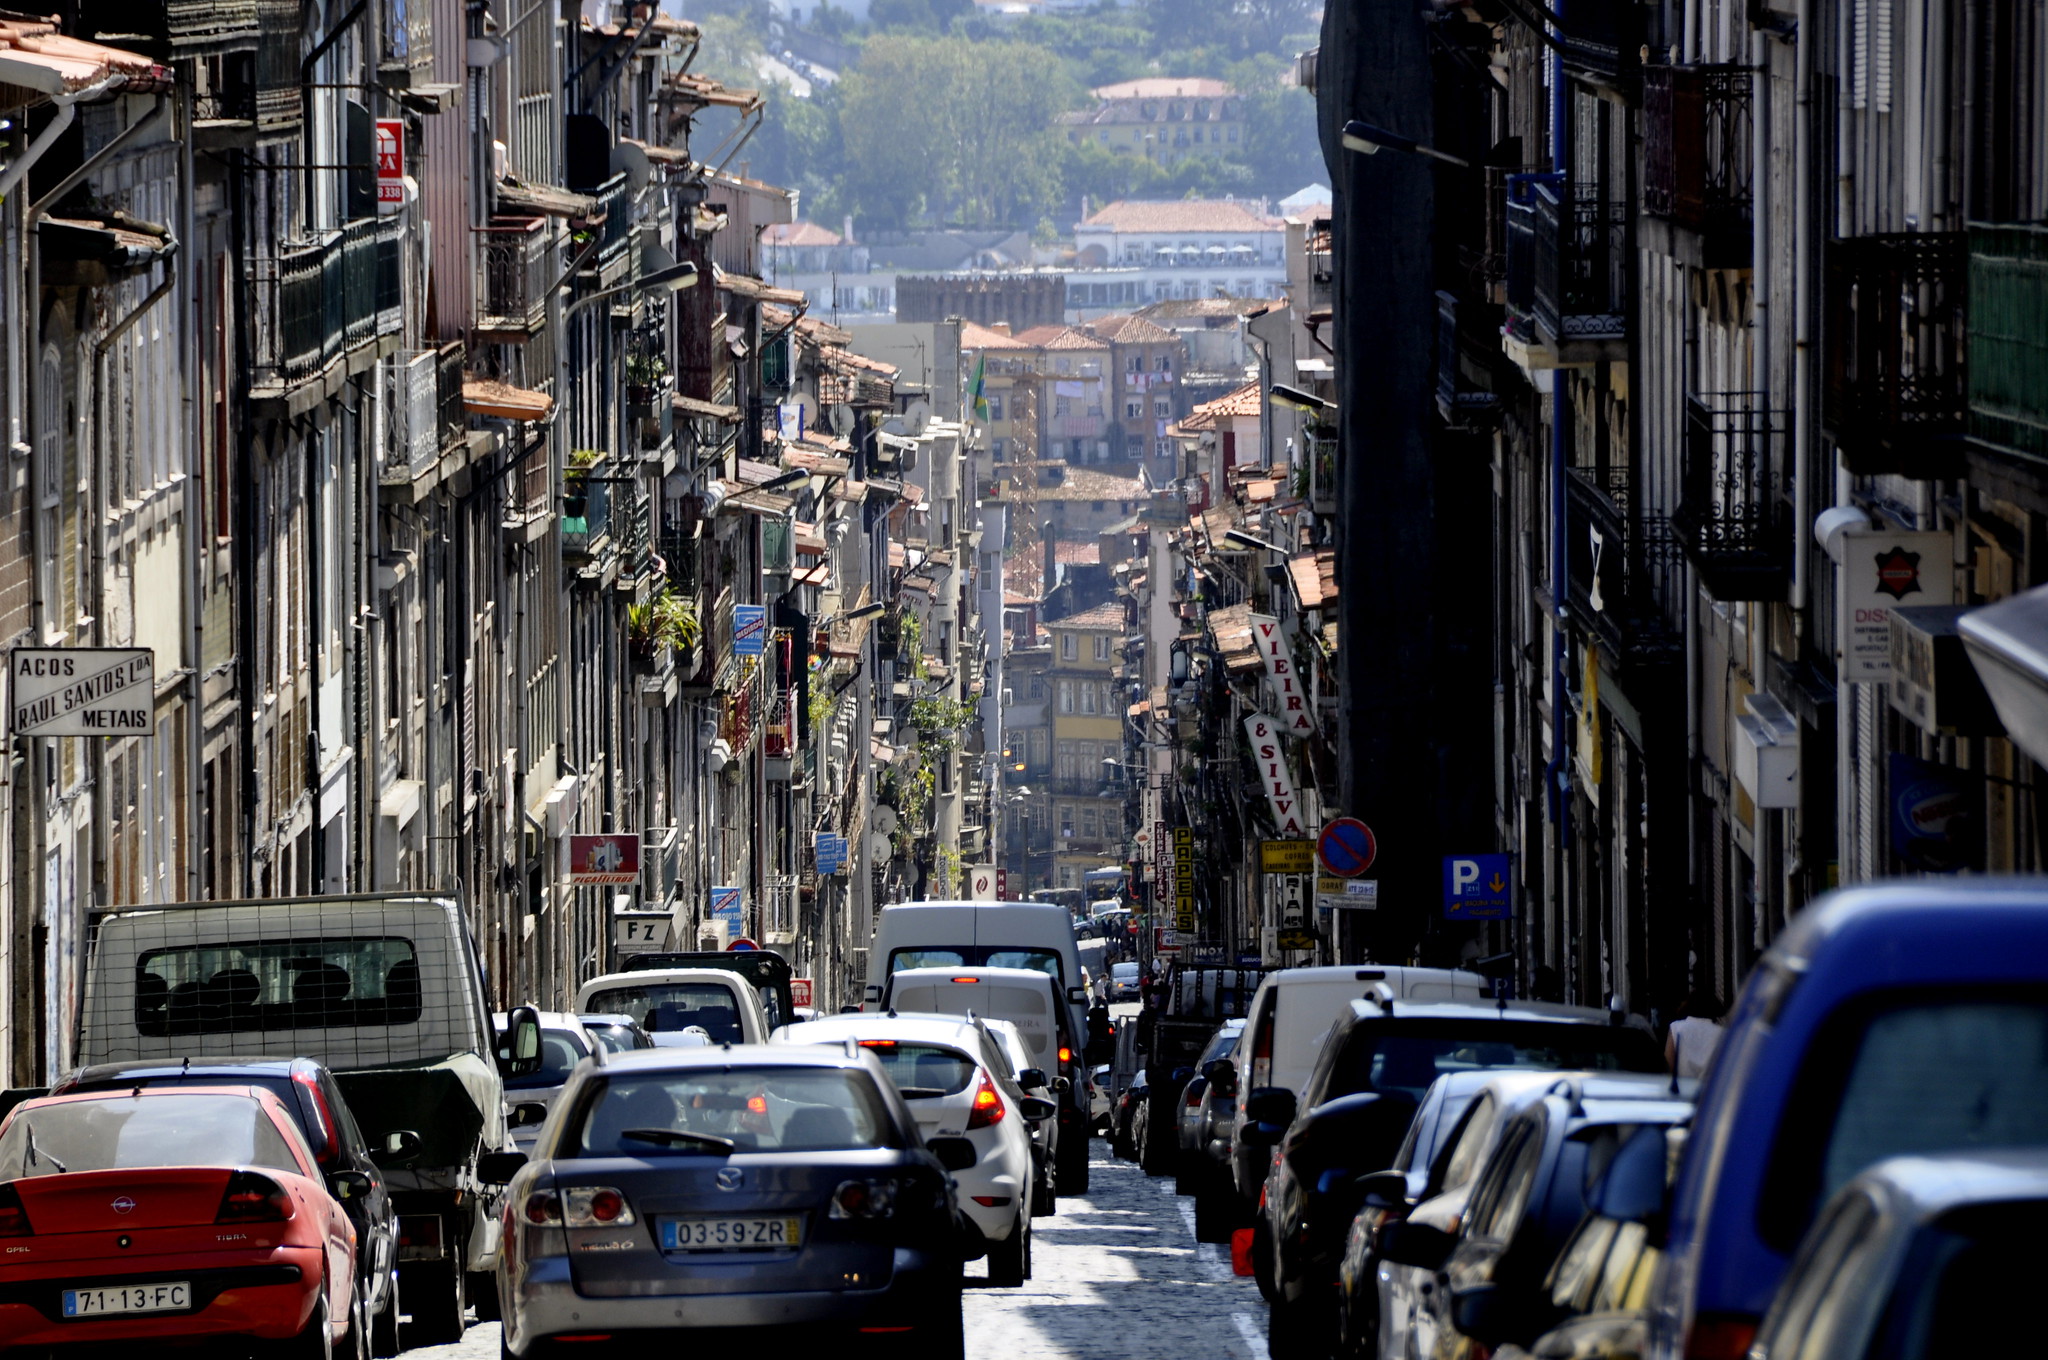 Traffic in Porto. Image: Roberto Maldeno